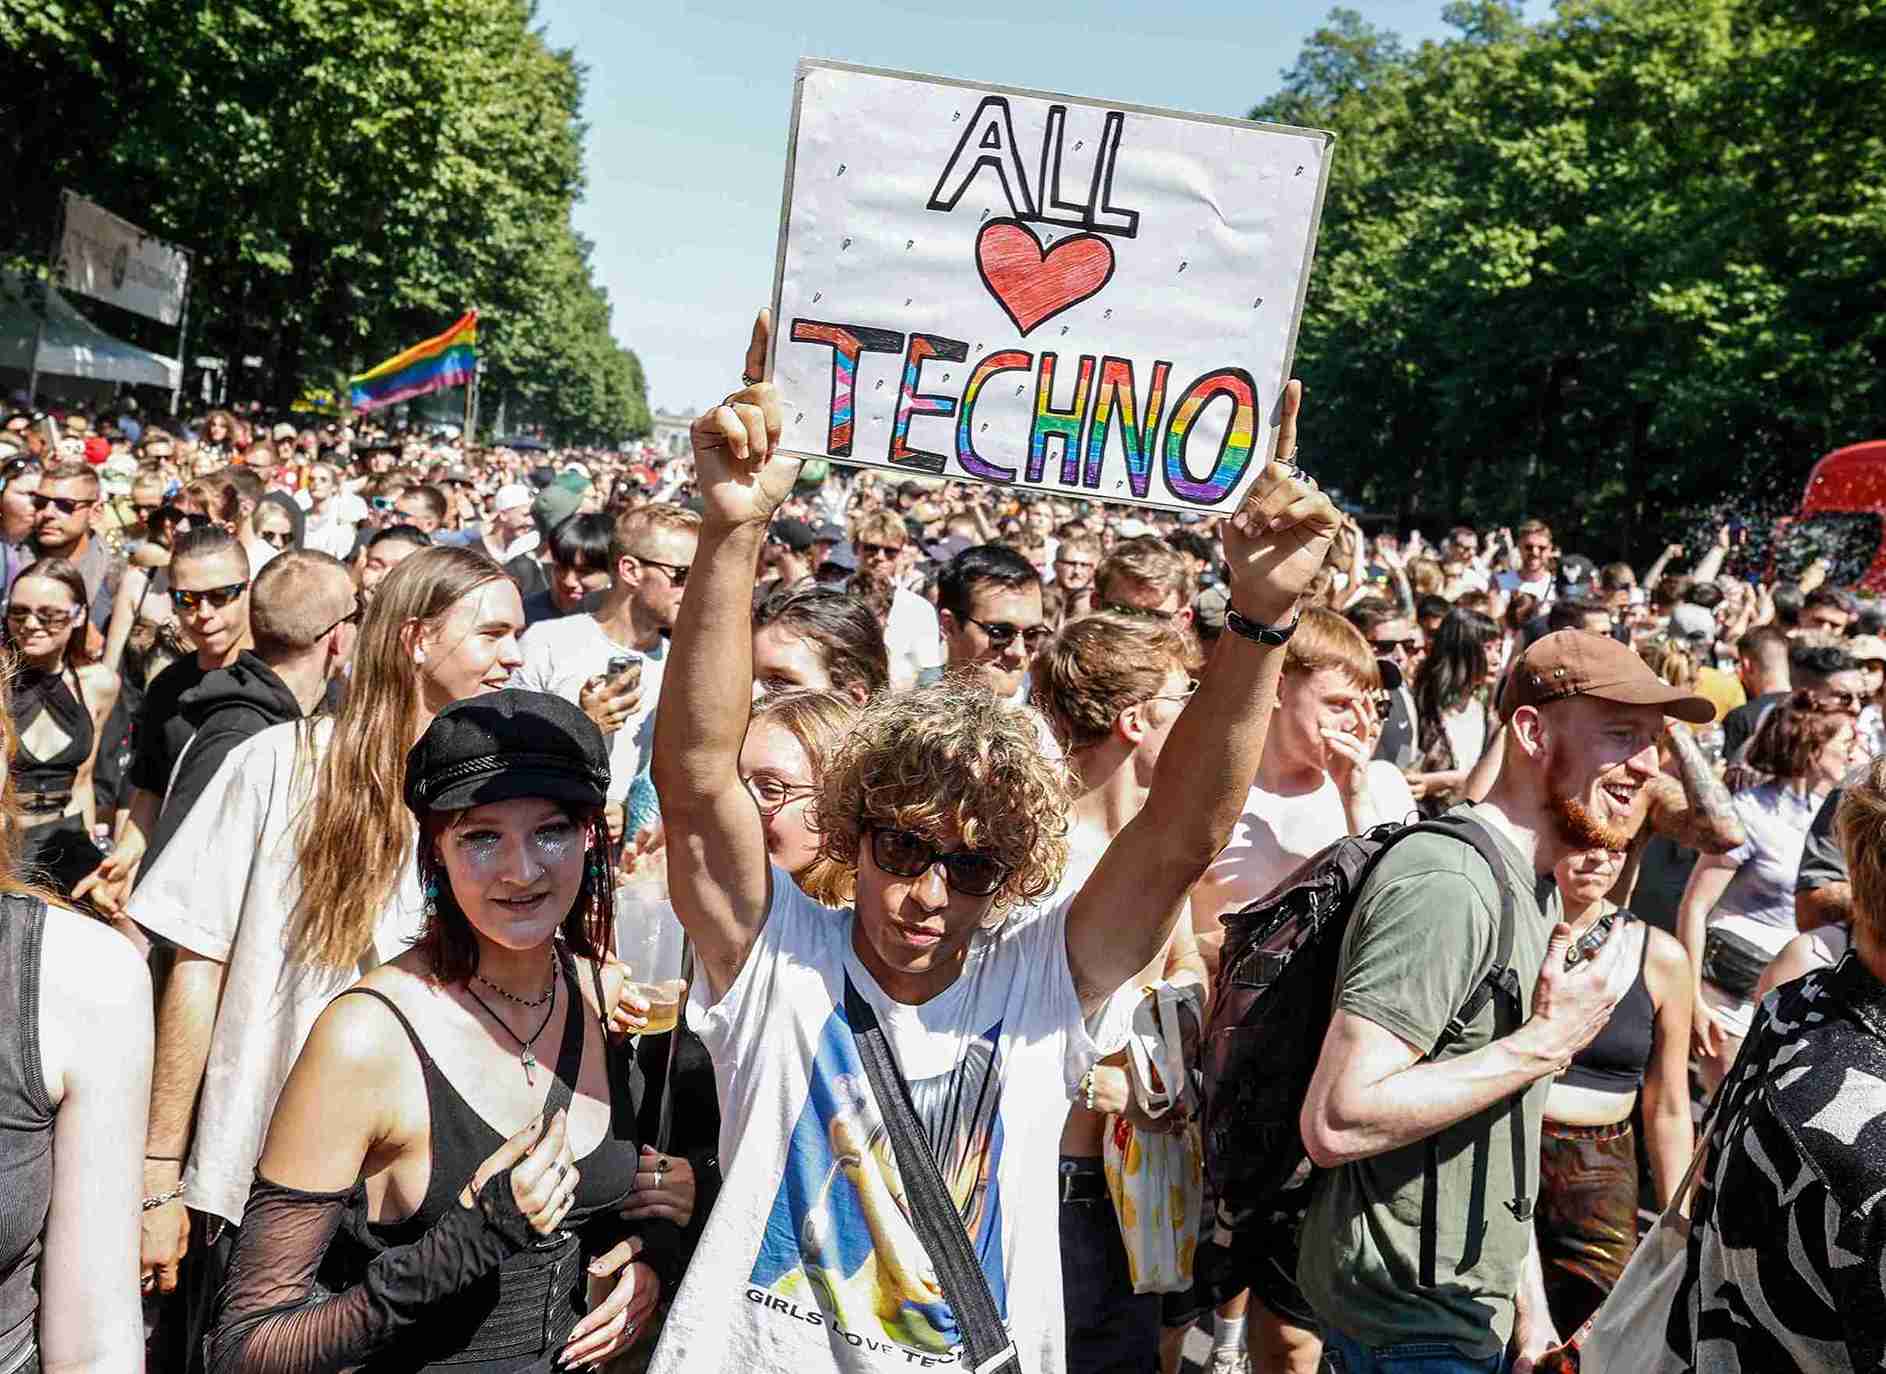 Techno fans celebrate in Berlin